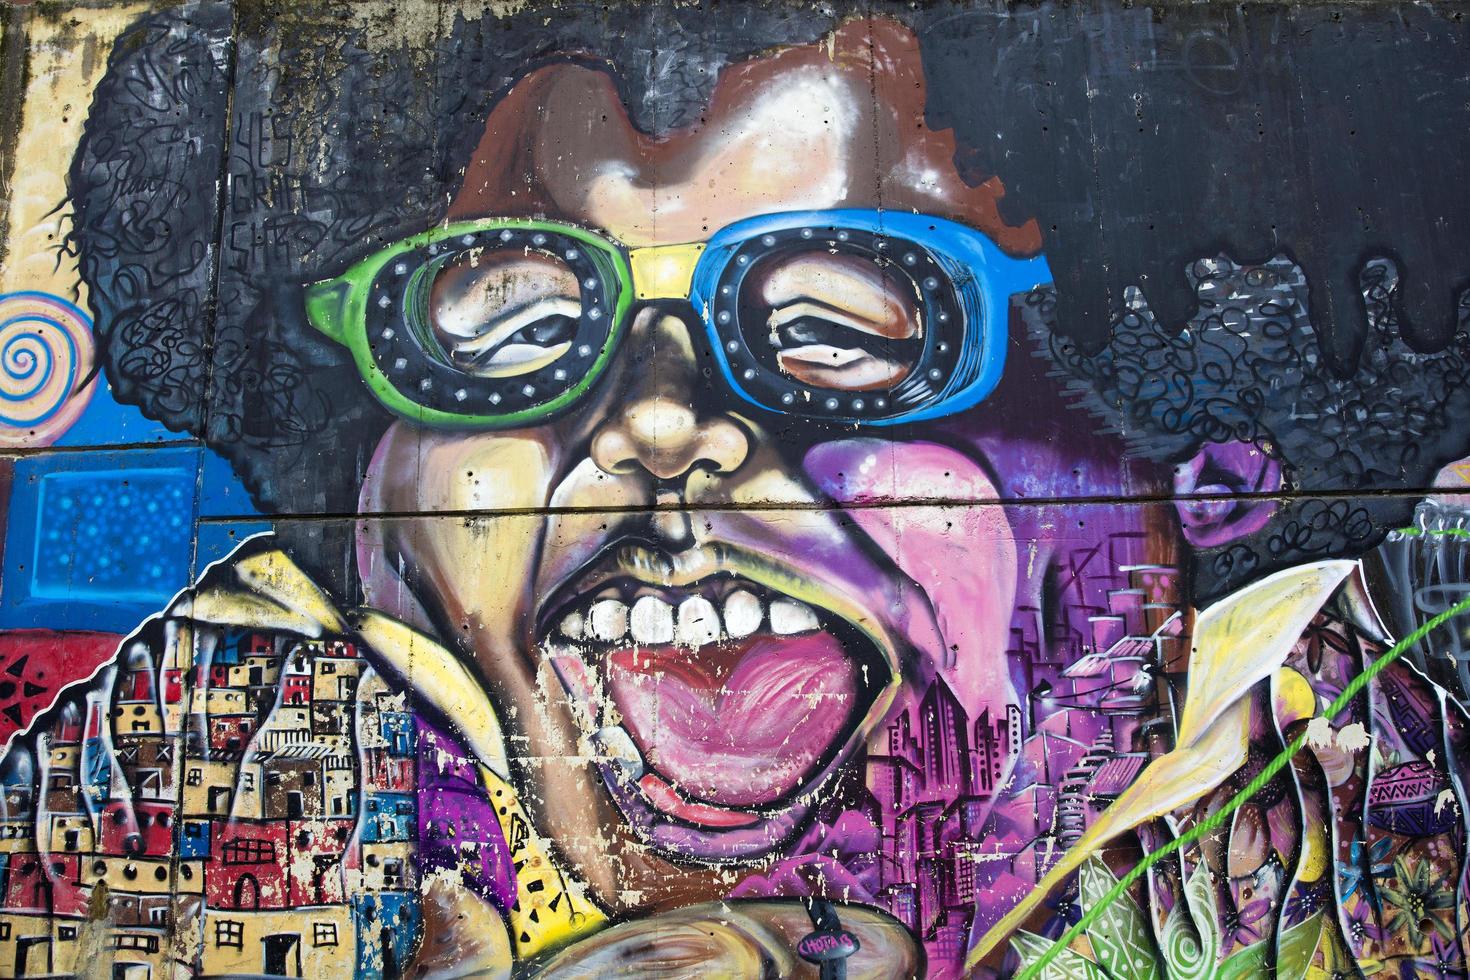 medellín, colômbia, 12 de setembro de 2019 - arte de rua da comuna 13 em medellin, colômbia. outrora conhecido como o bairro mais perigoso da Colômbia, hoje o passeio de graffiti é uma das atrações turísticas mais populares. foto